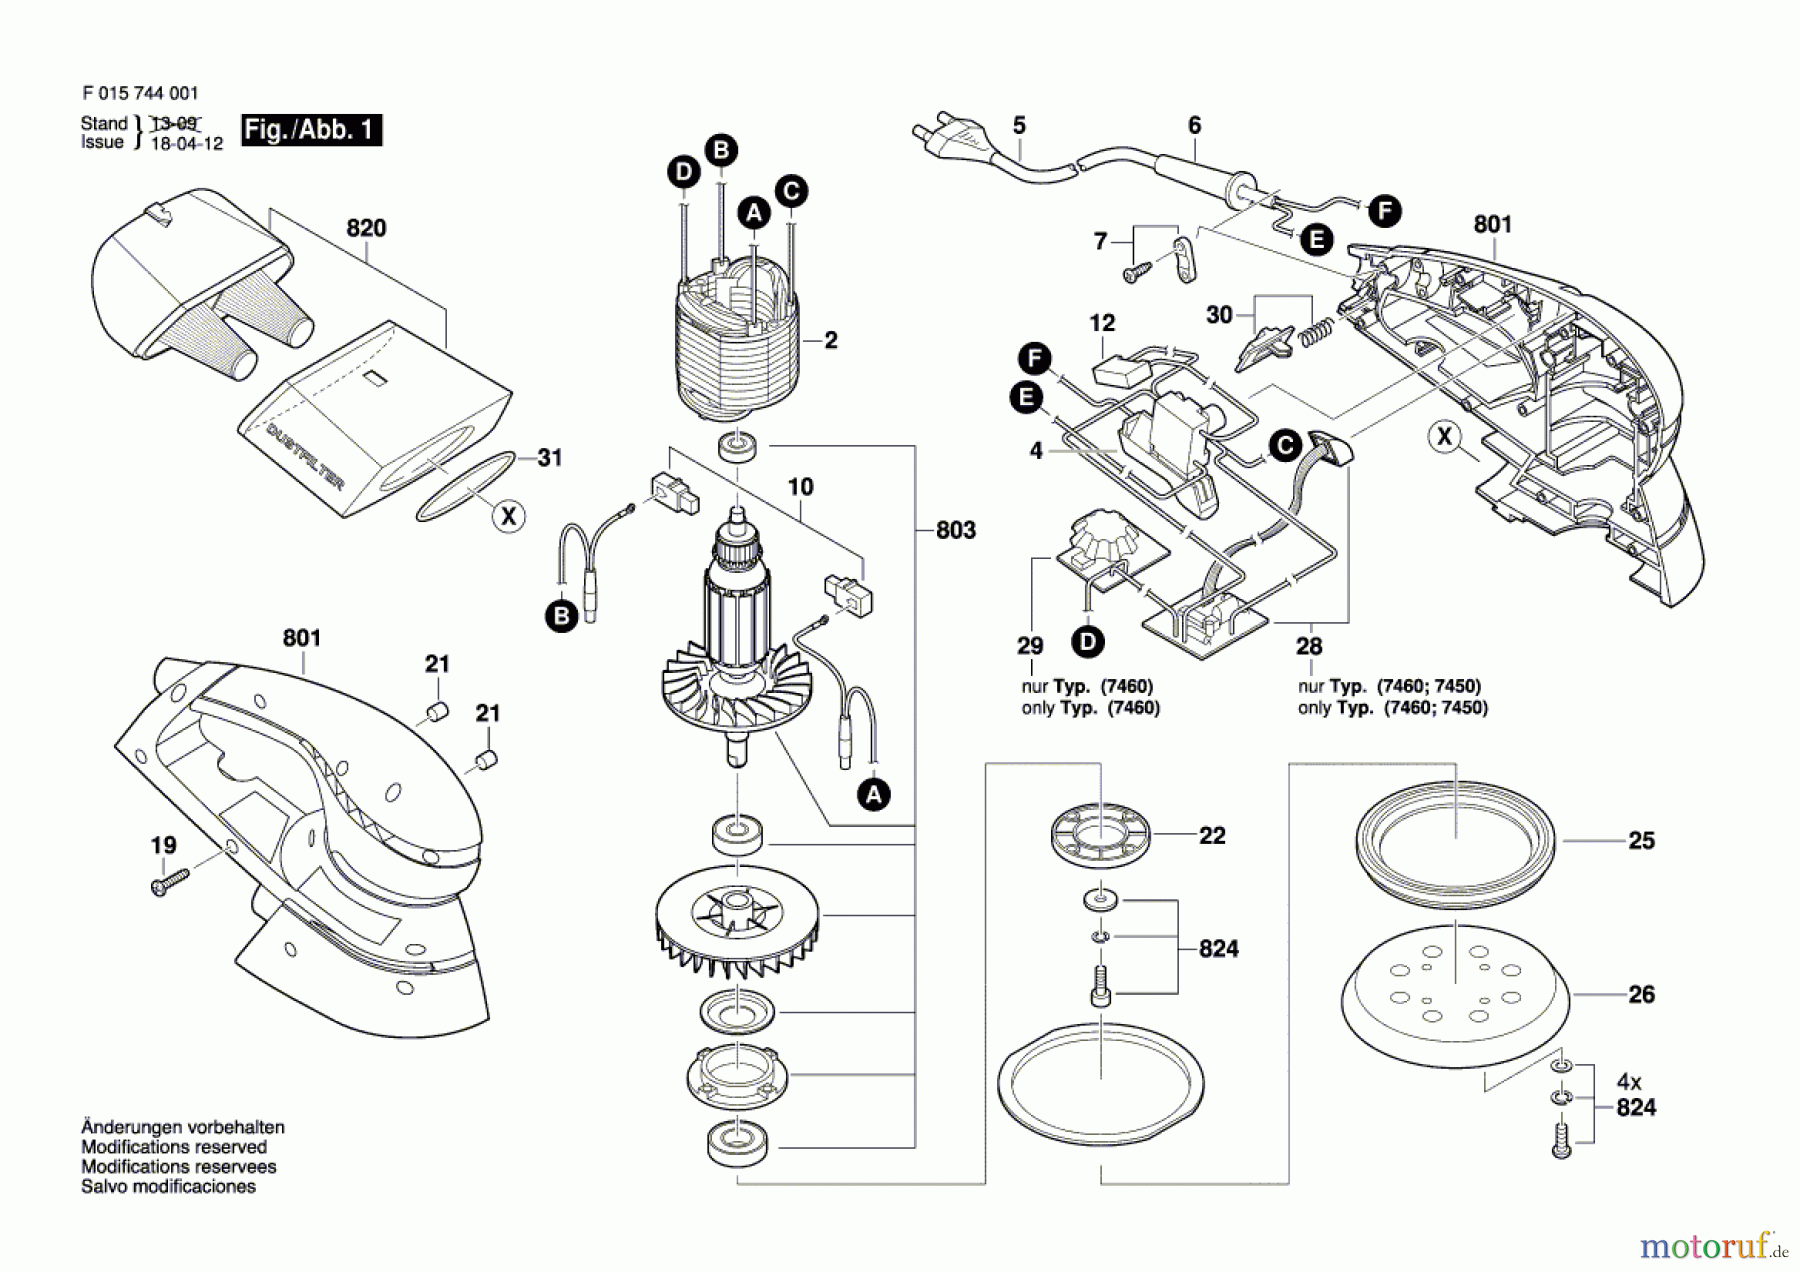  Bosch Werkzeug Exzenterschleifer 7450 Seite 1